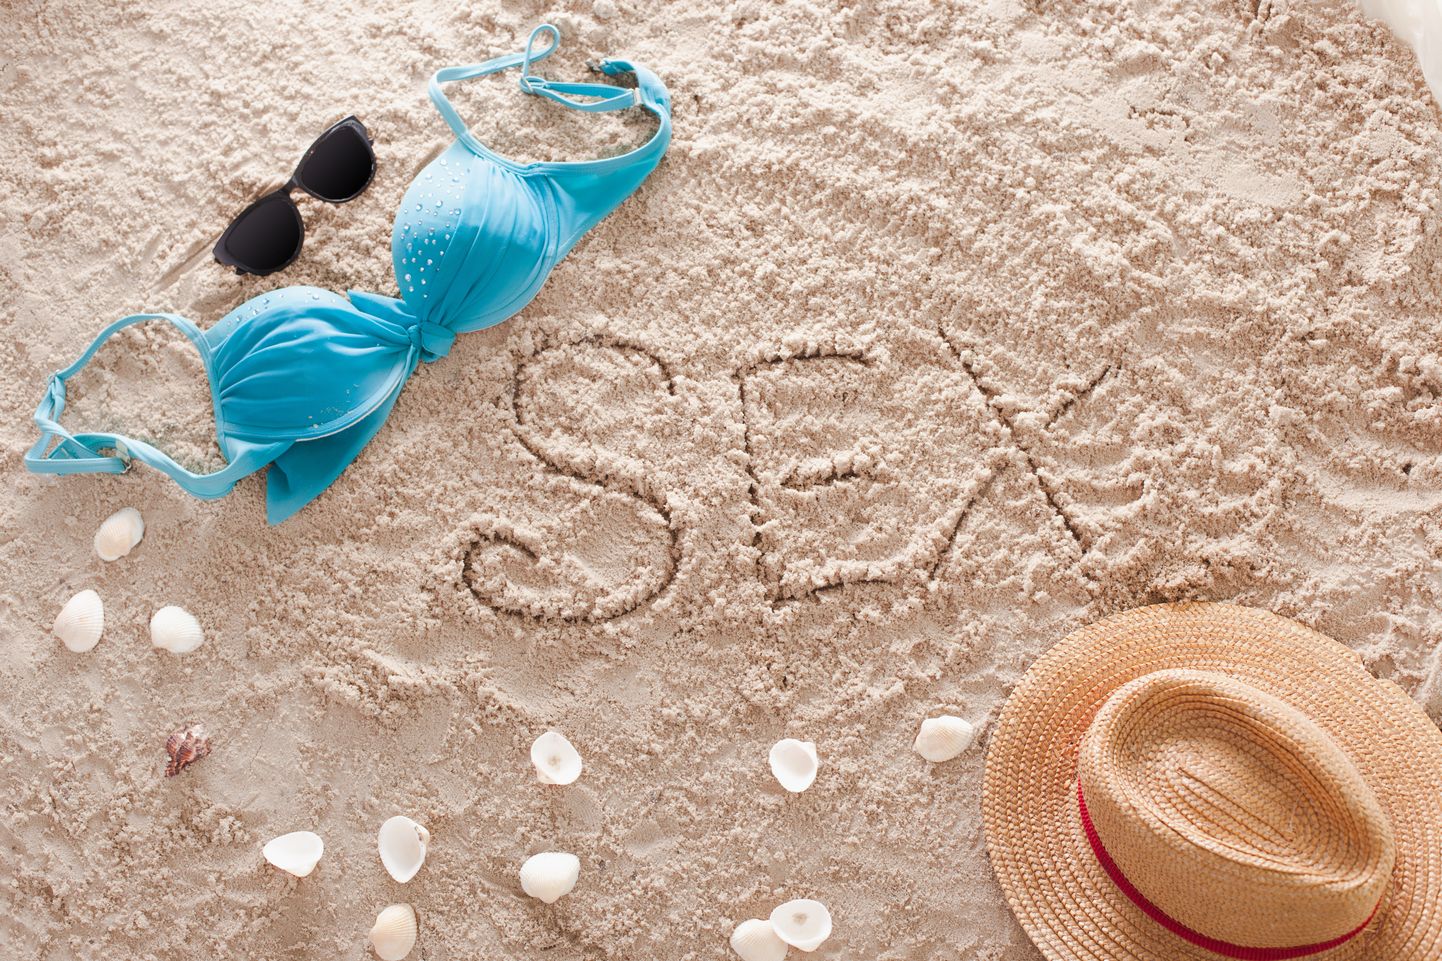 Секс на пляже